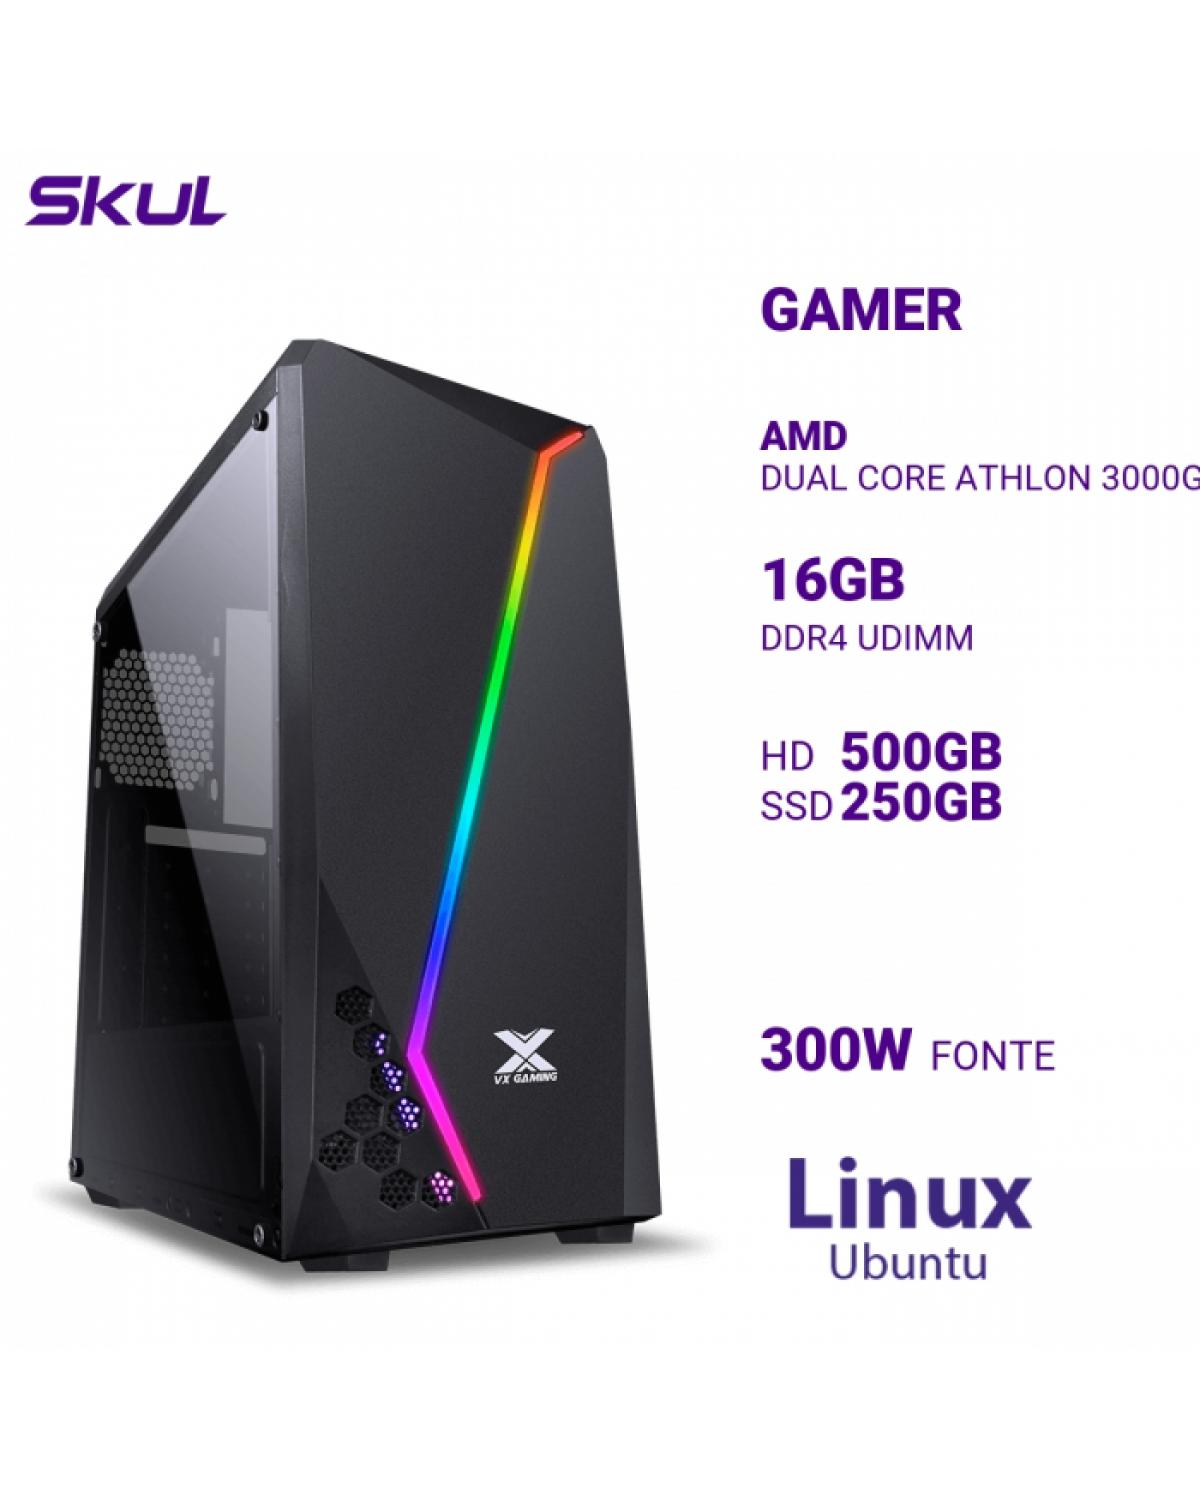 COMPUTADOR GAMER 1000 DUAL CORE ATHLON 3000G 3.50GHZ MEM 16GB DDR4 HD 500GB SSD 250GB NVME FONTE 300W LINUX